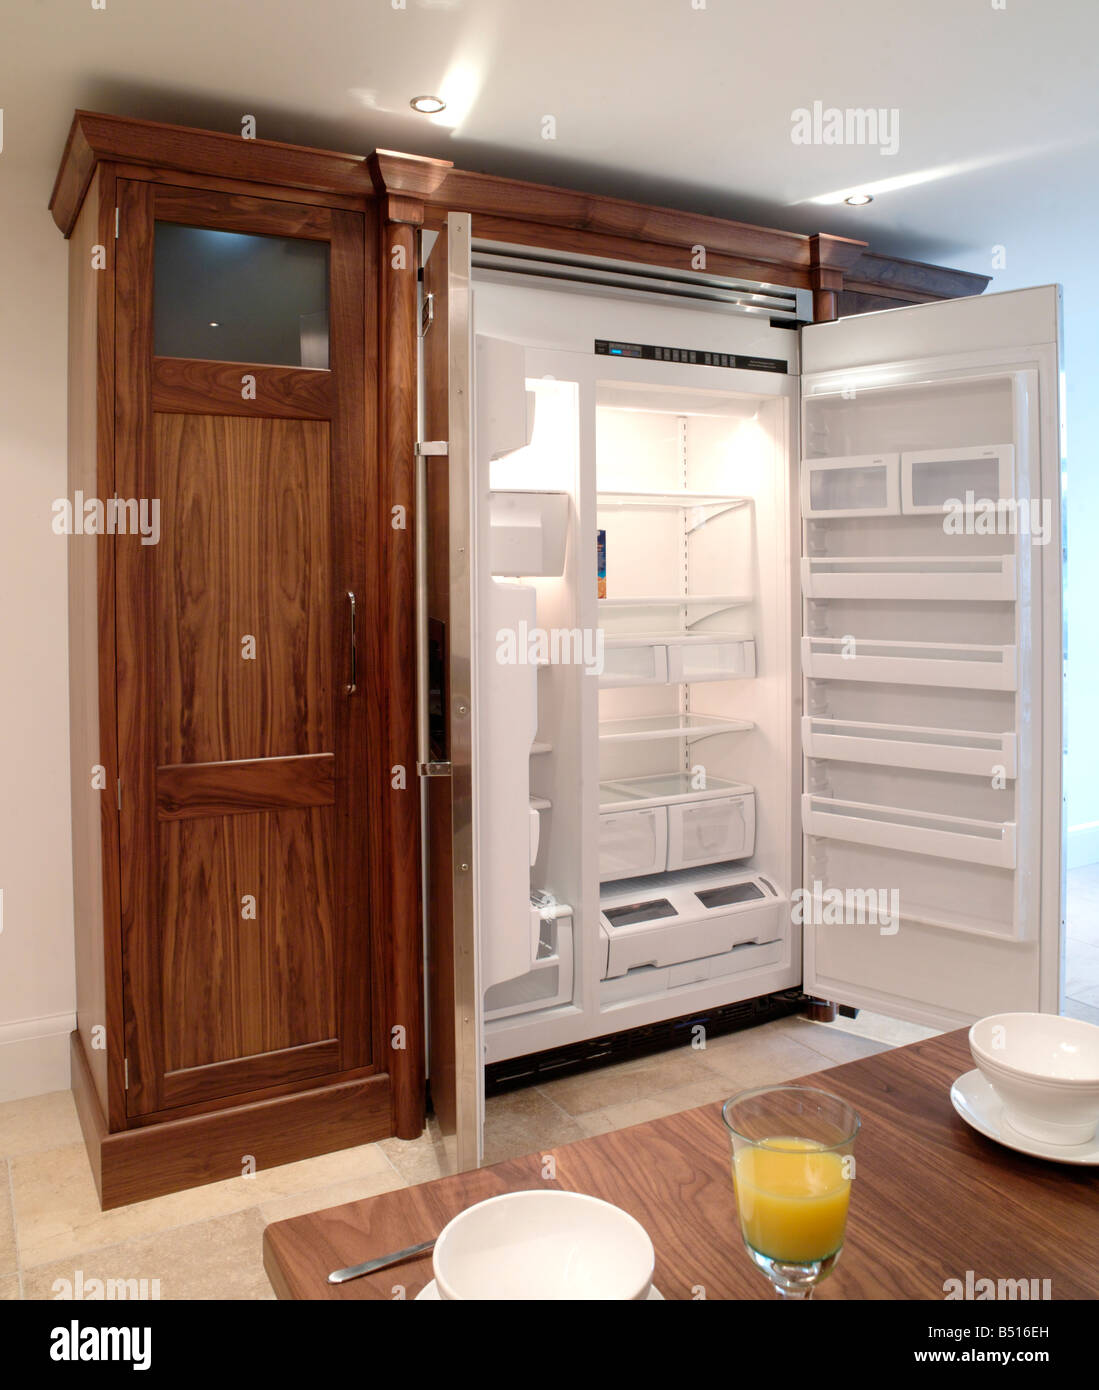 Free standing frigo congelatore con enclosure di storage e rifinito in legno scuro Foto Stock